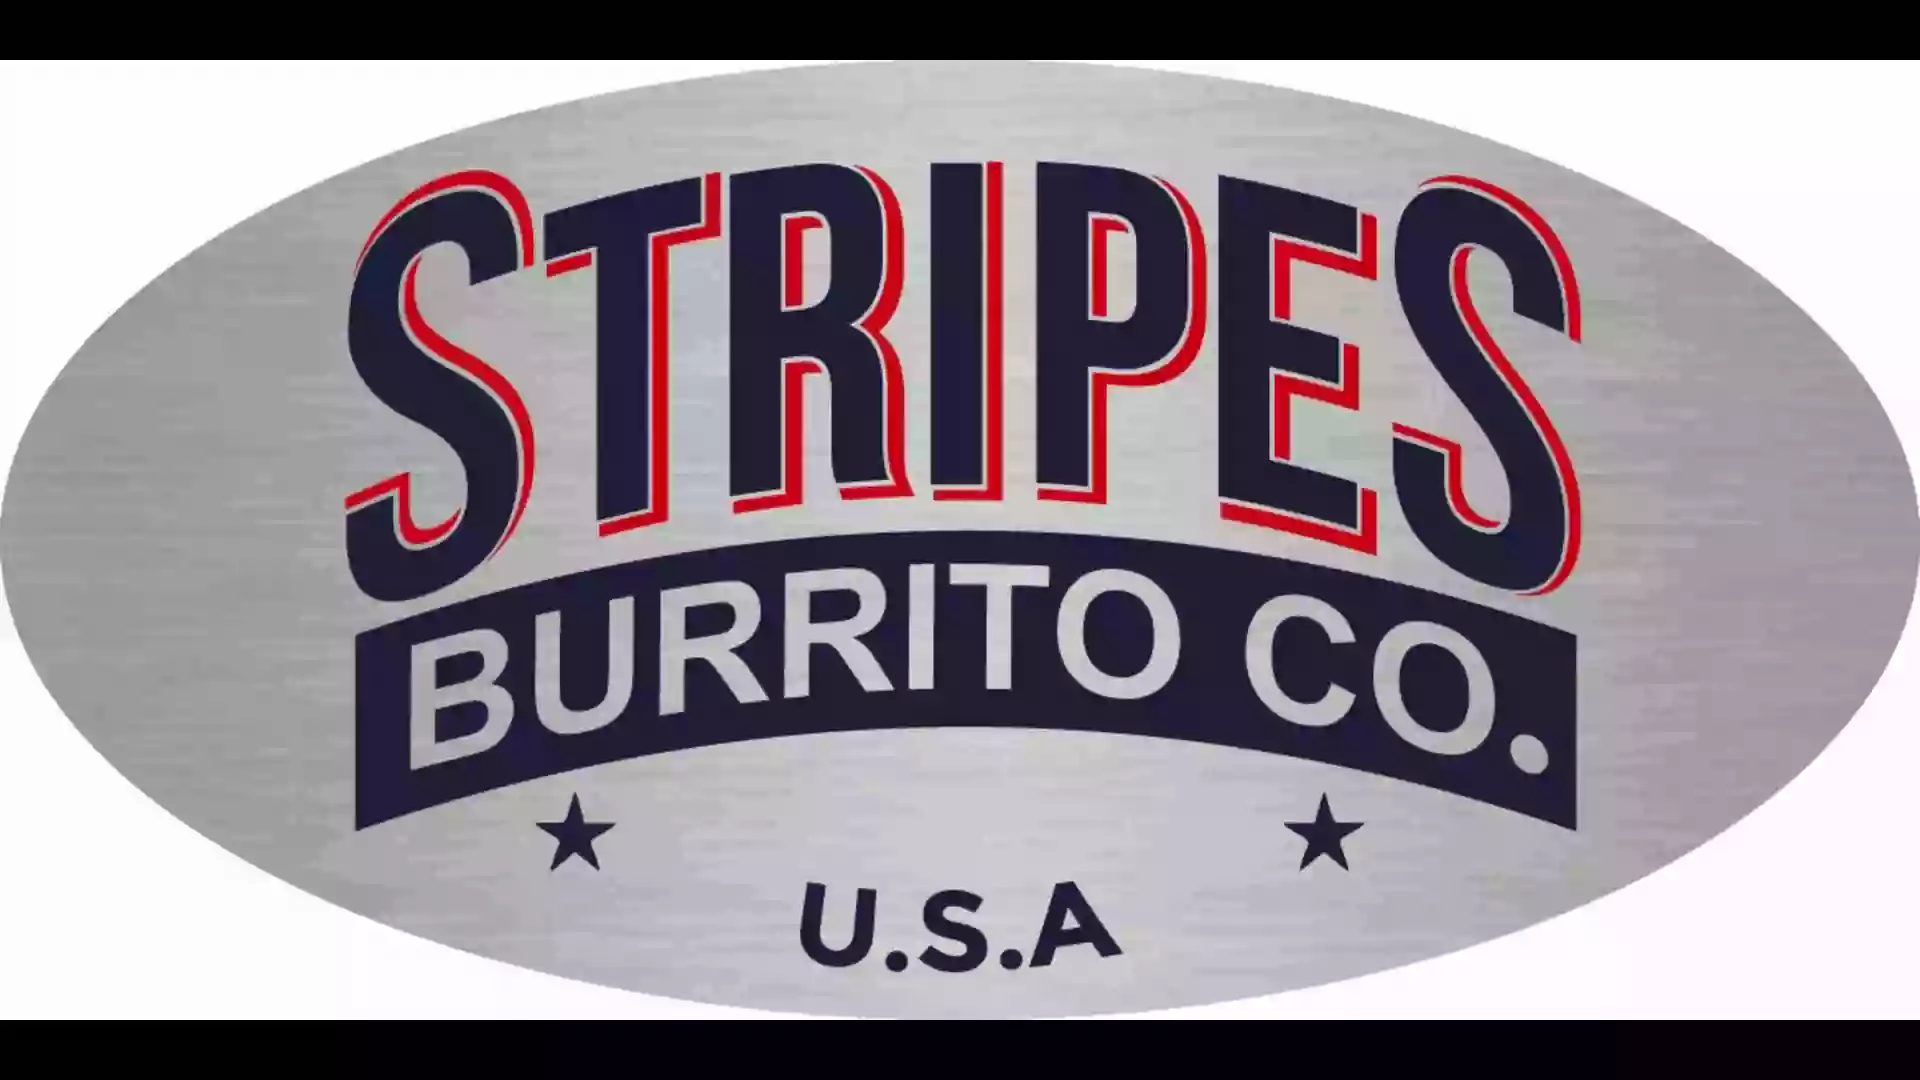 Stripes Burrito Co